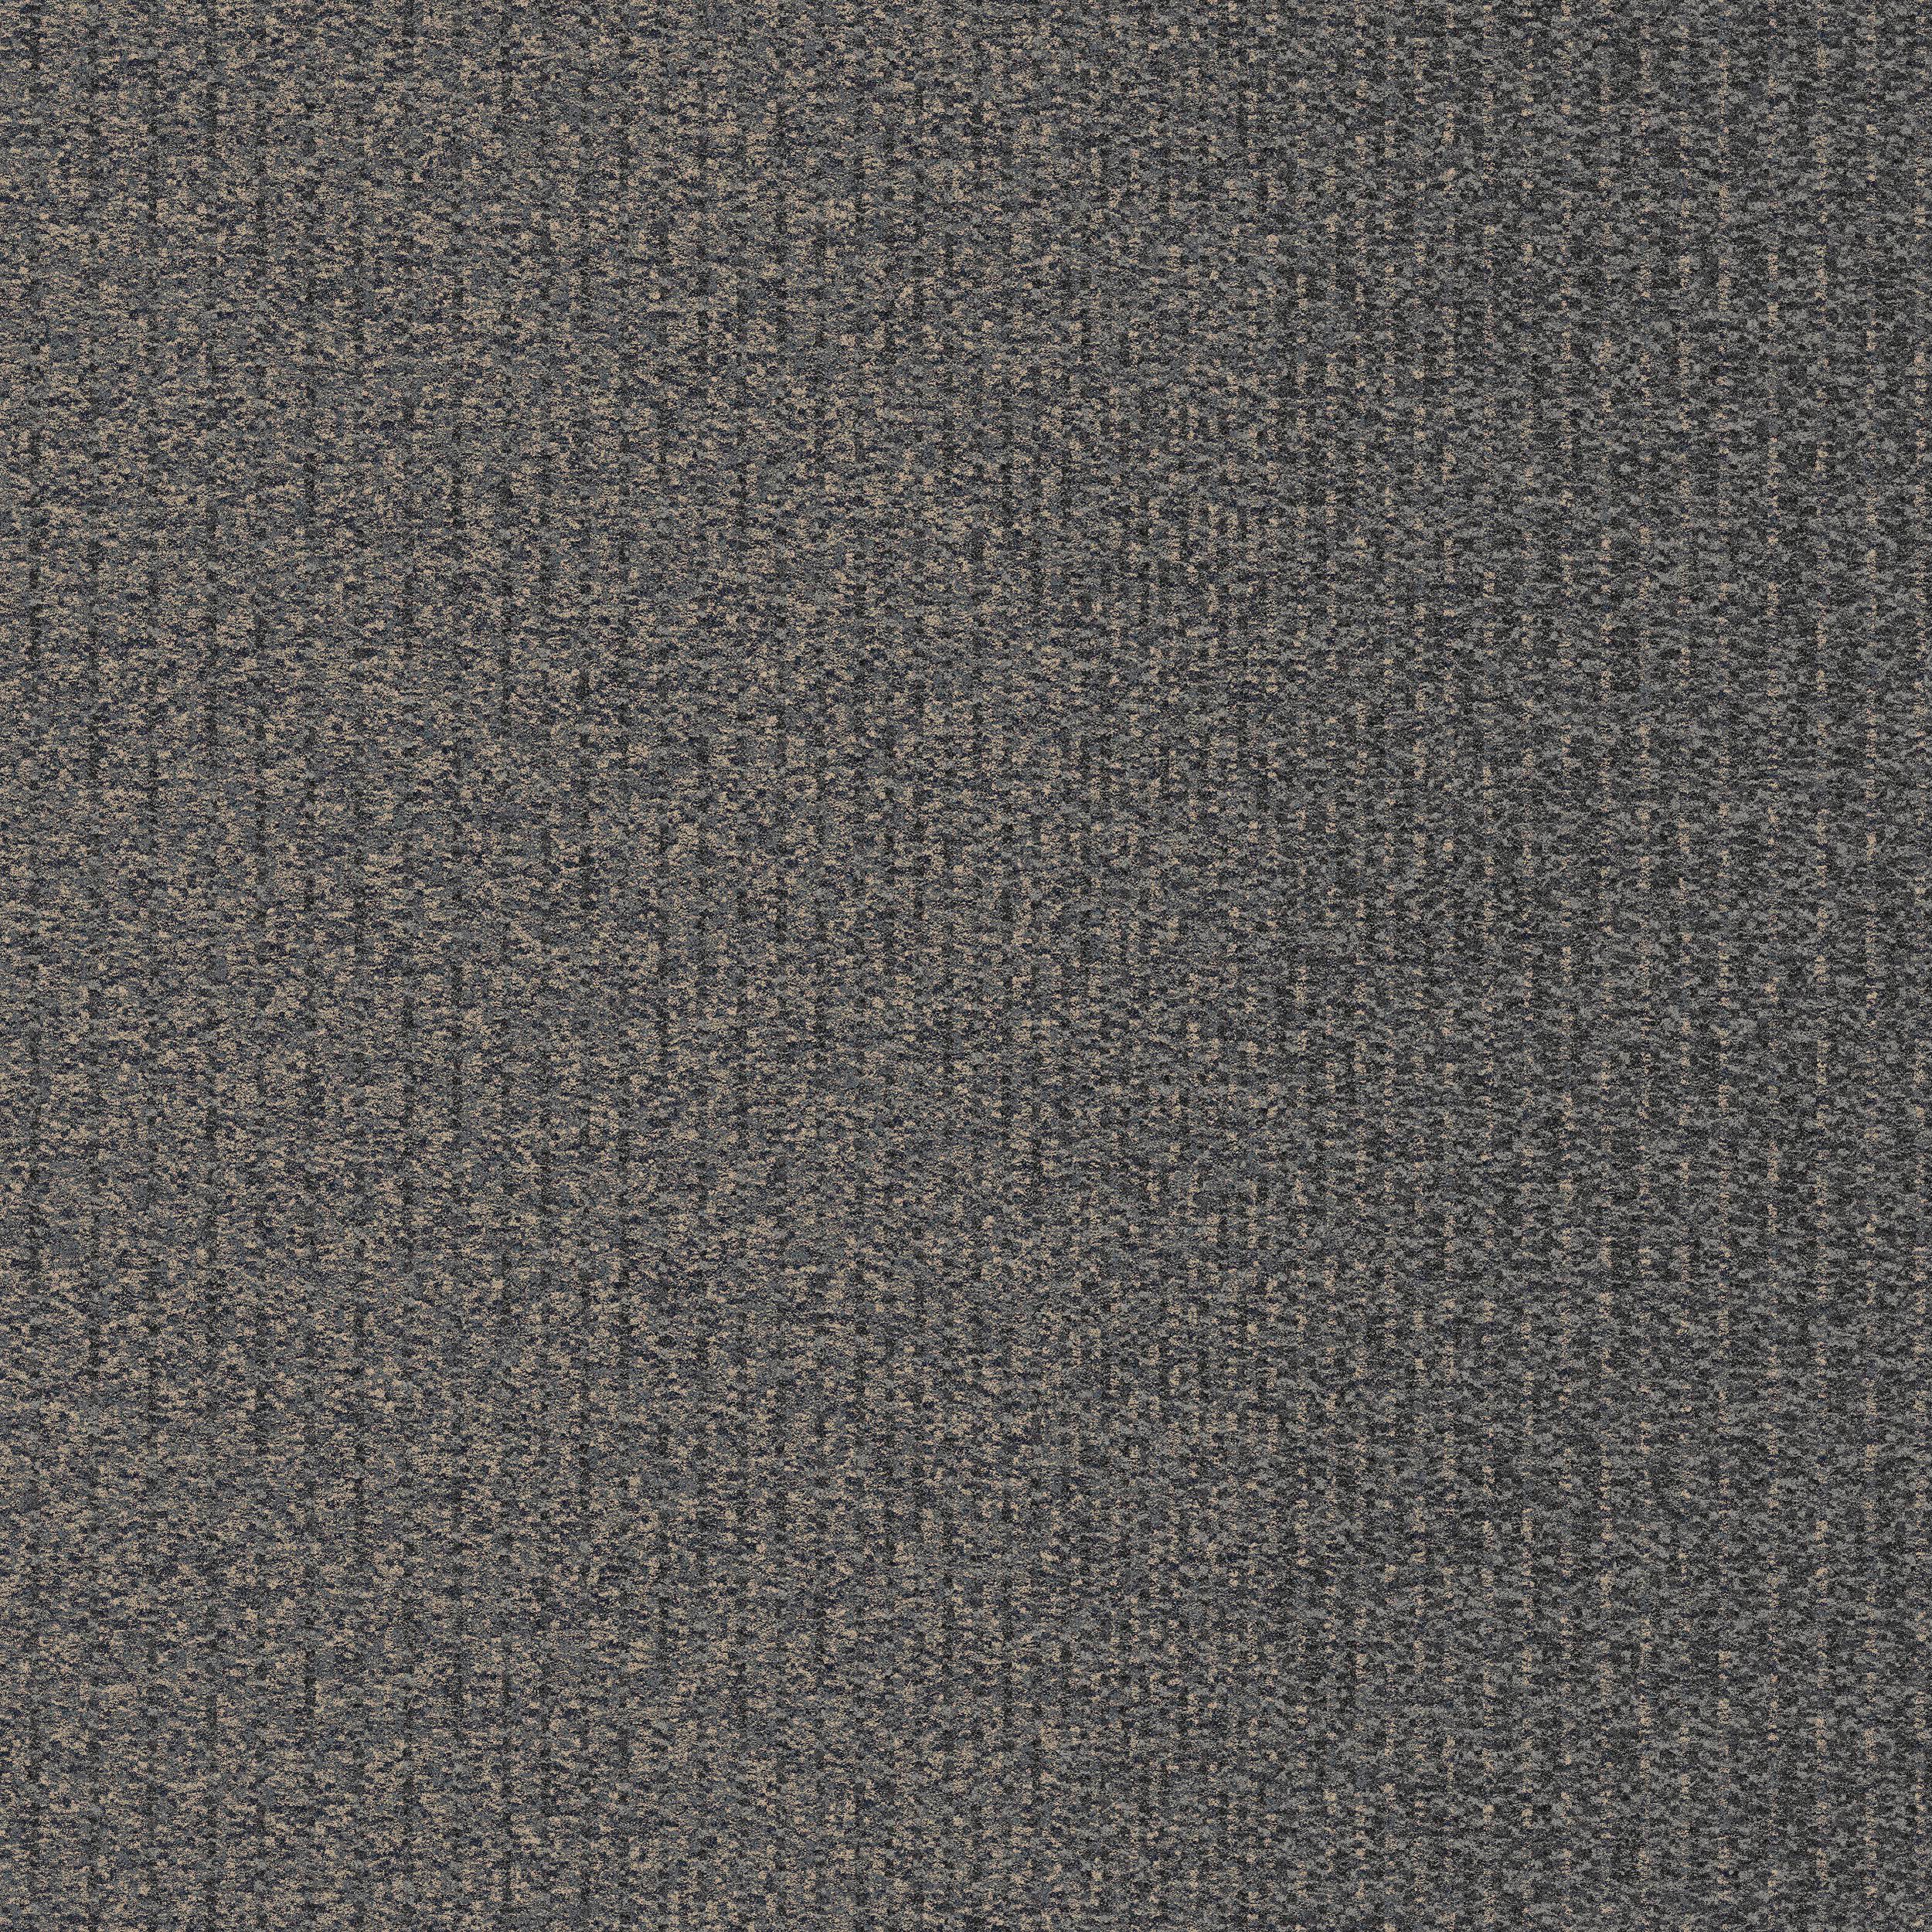 1st Avenue Carpet Tile In Flannel imagen número 1